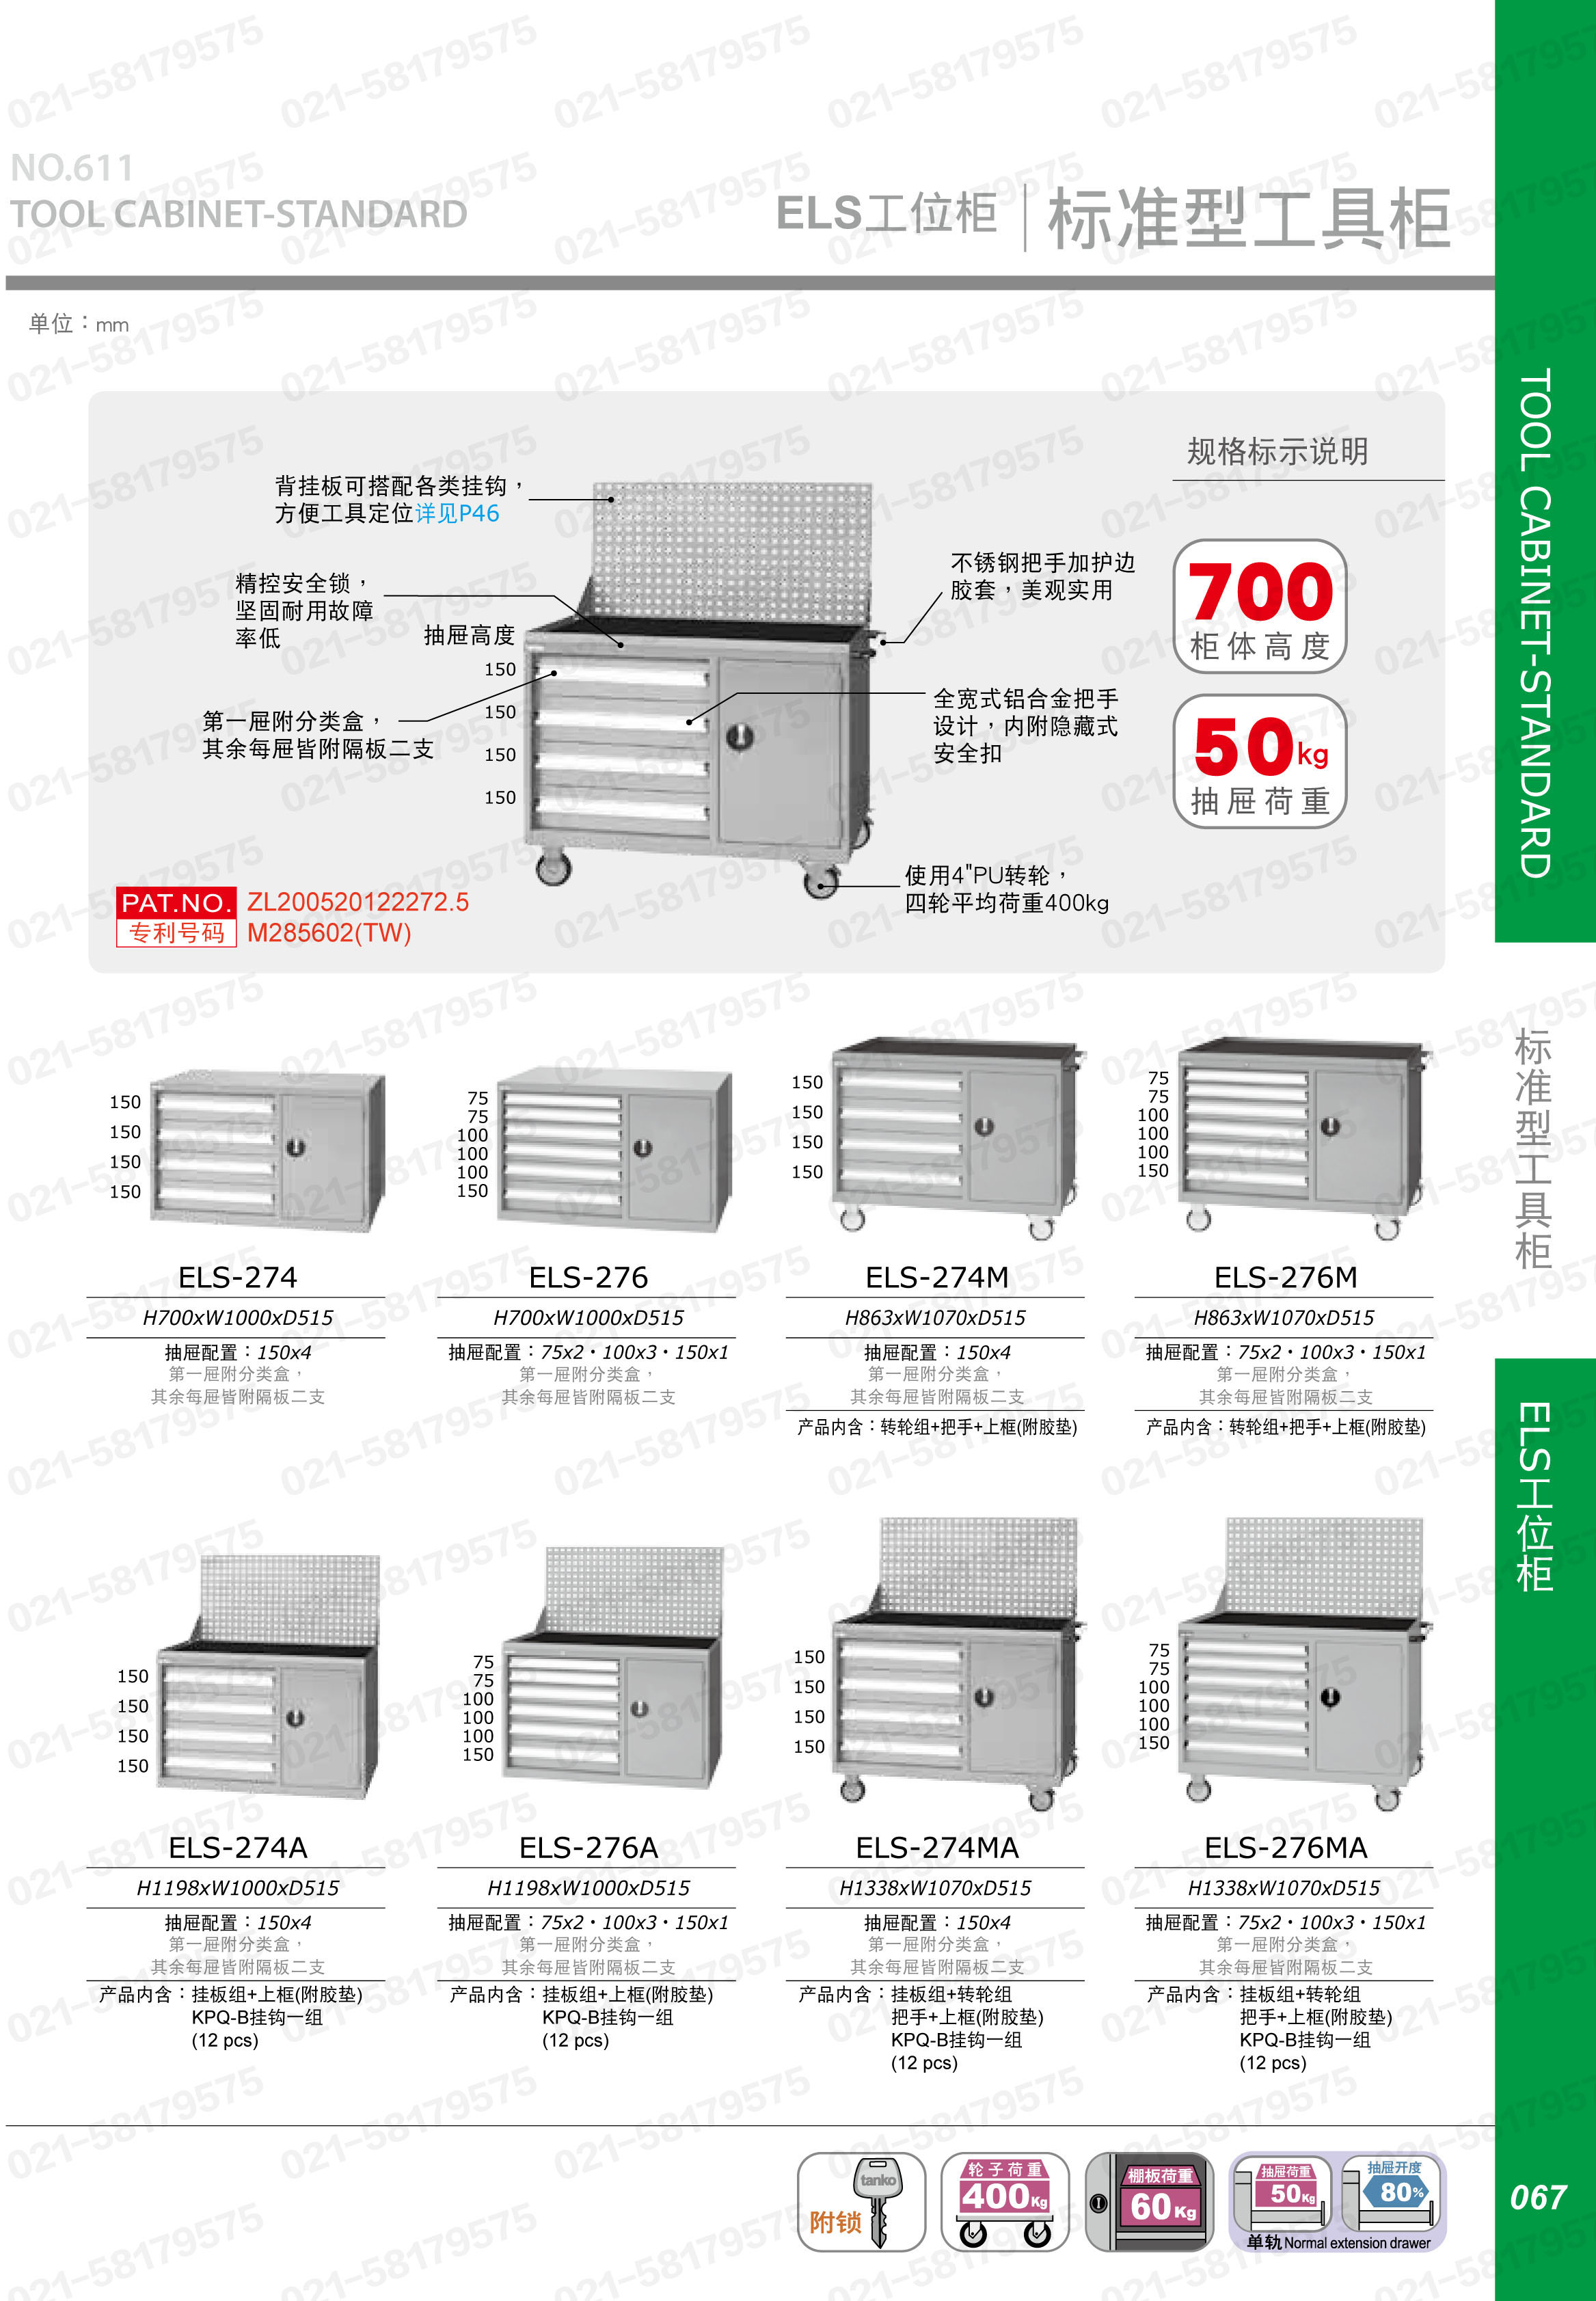 标准型门抽组合工具柜,ELS-276,1Y0967